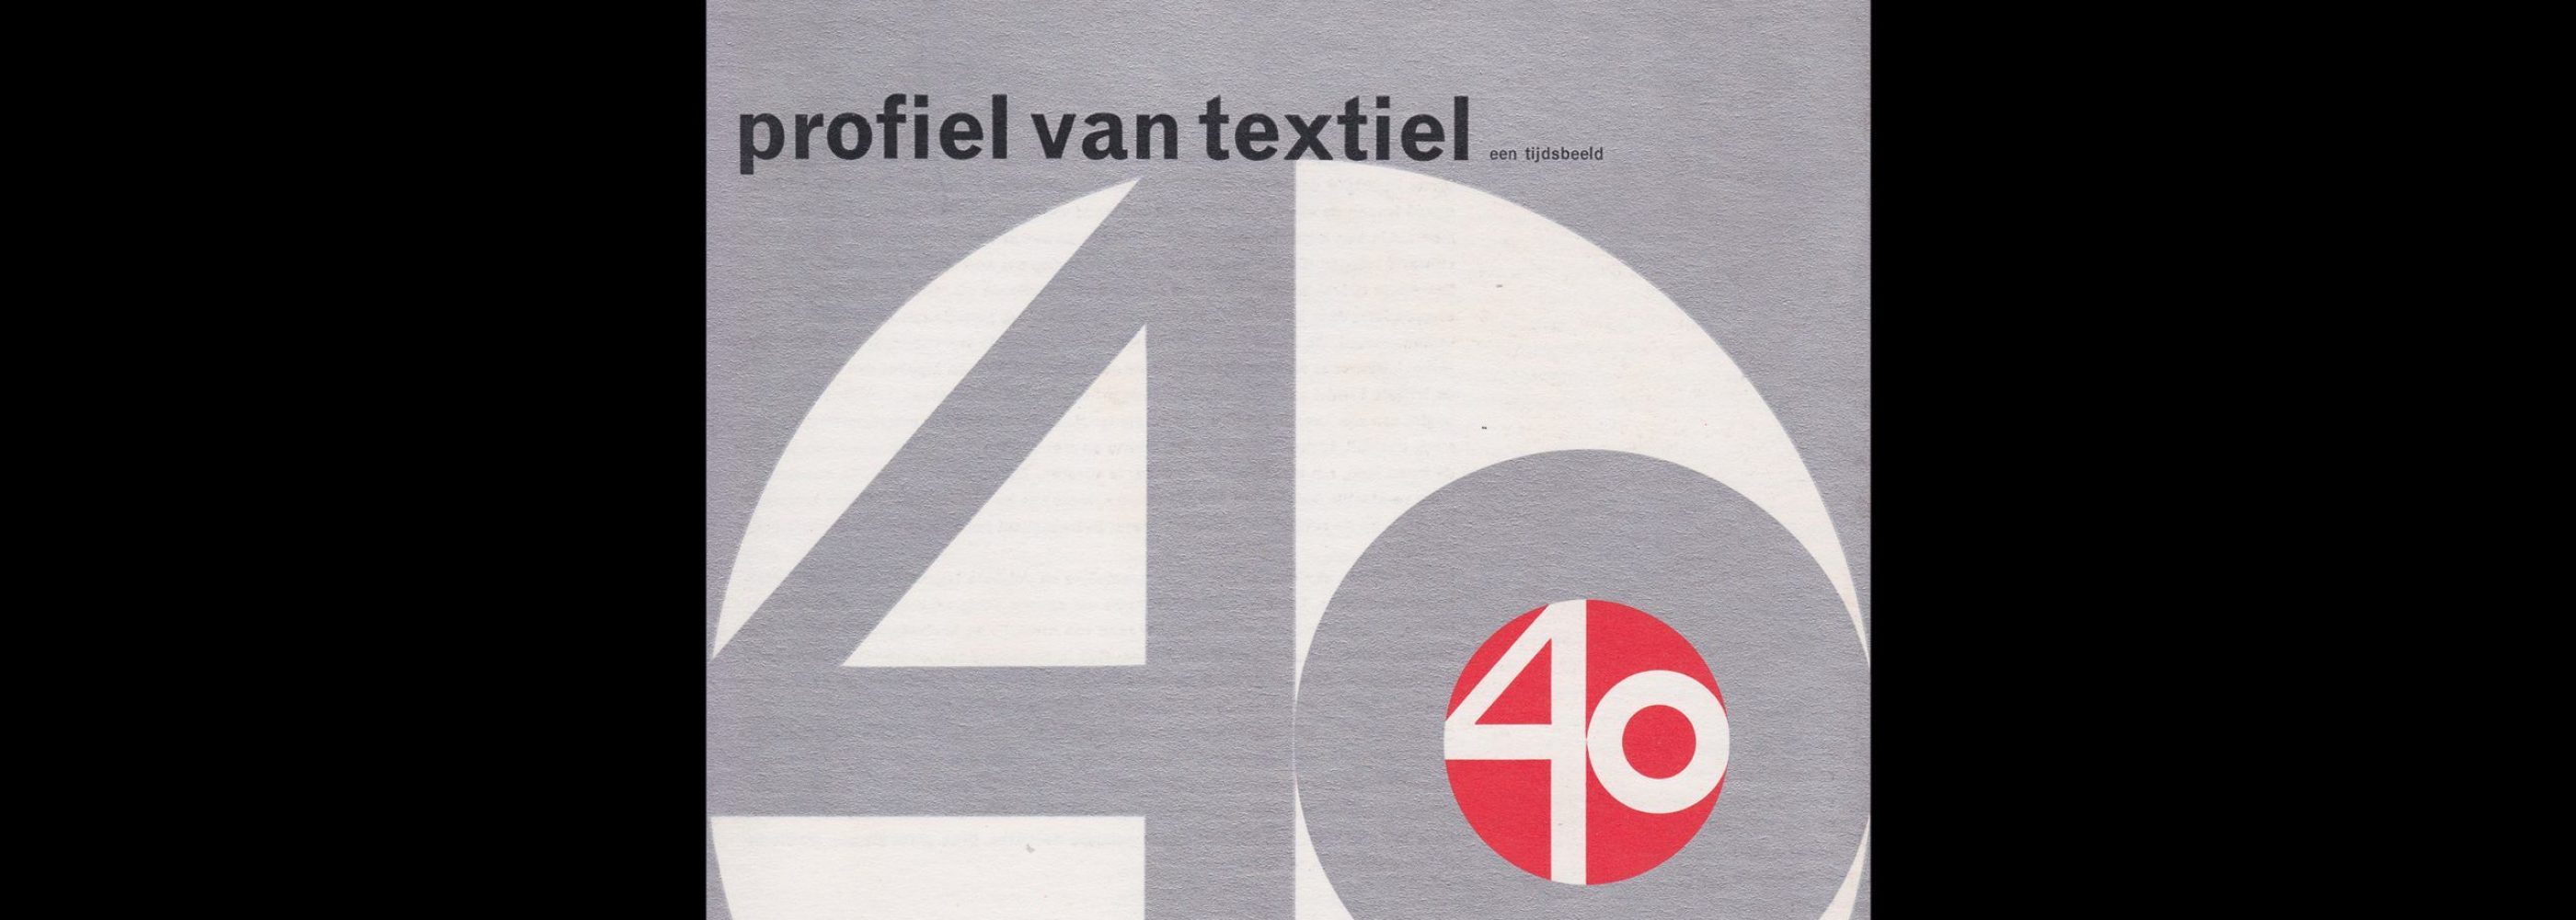 Profiel van Textiel, Stedelijk Museum, Amsterdam, 1963 designed by Wim Crouwel